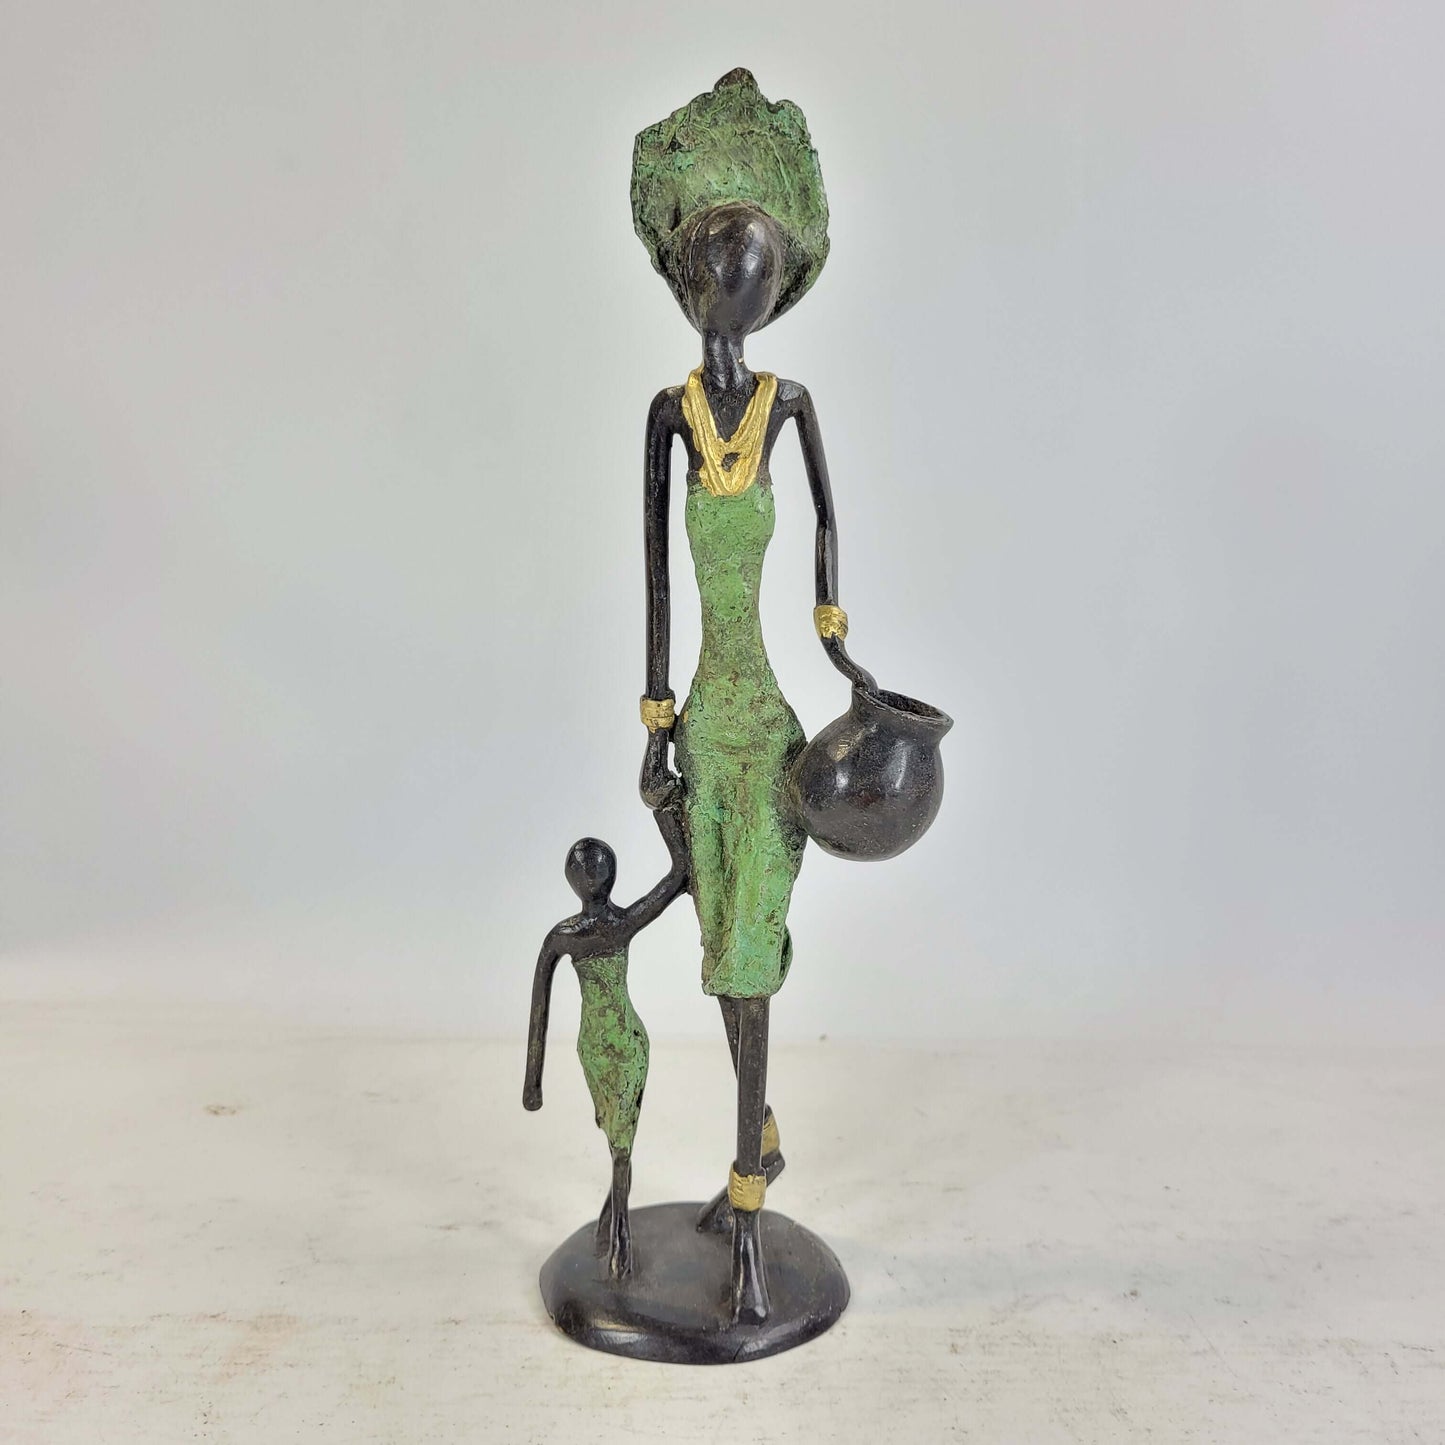 Bronze-Skulptur "Frau mit Amphora und Kind an der Hand" by Issouf | verschiedene Größen und Farben